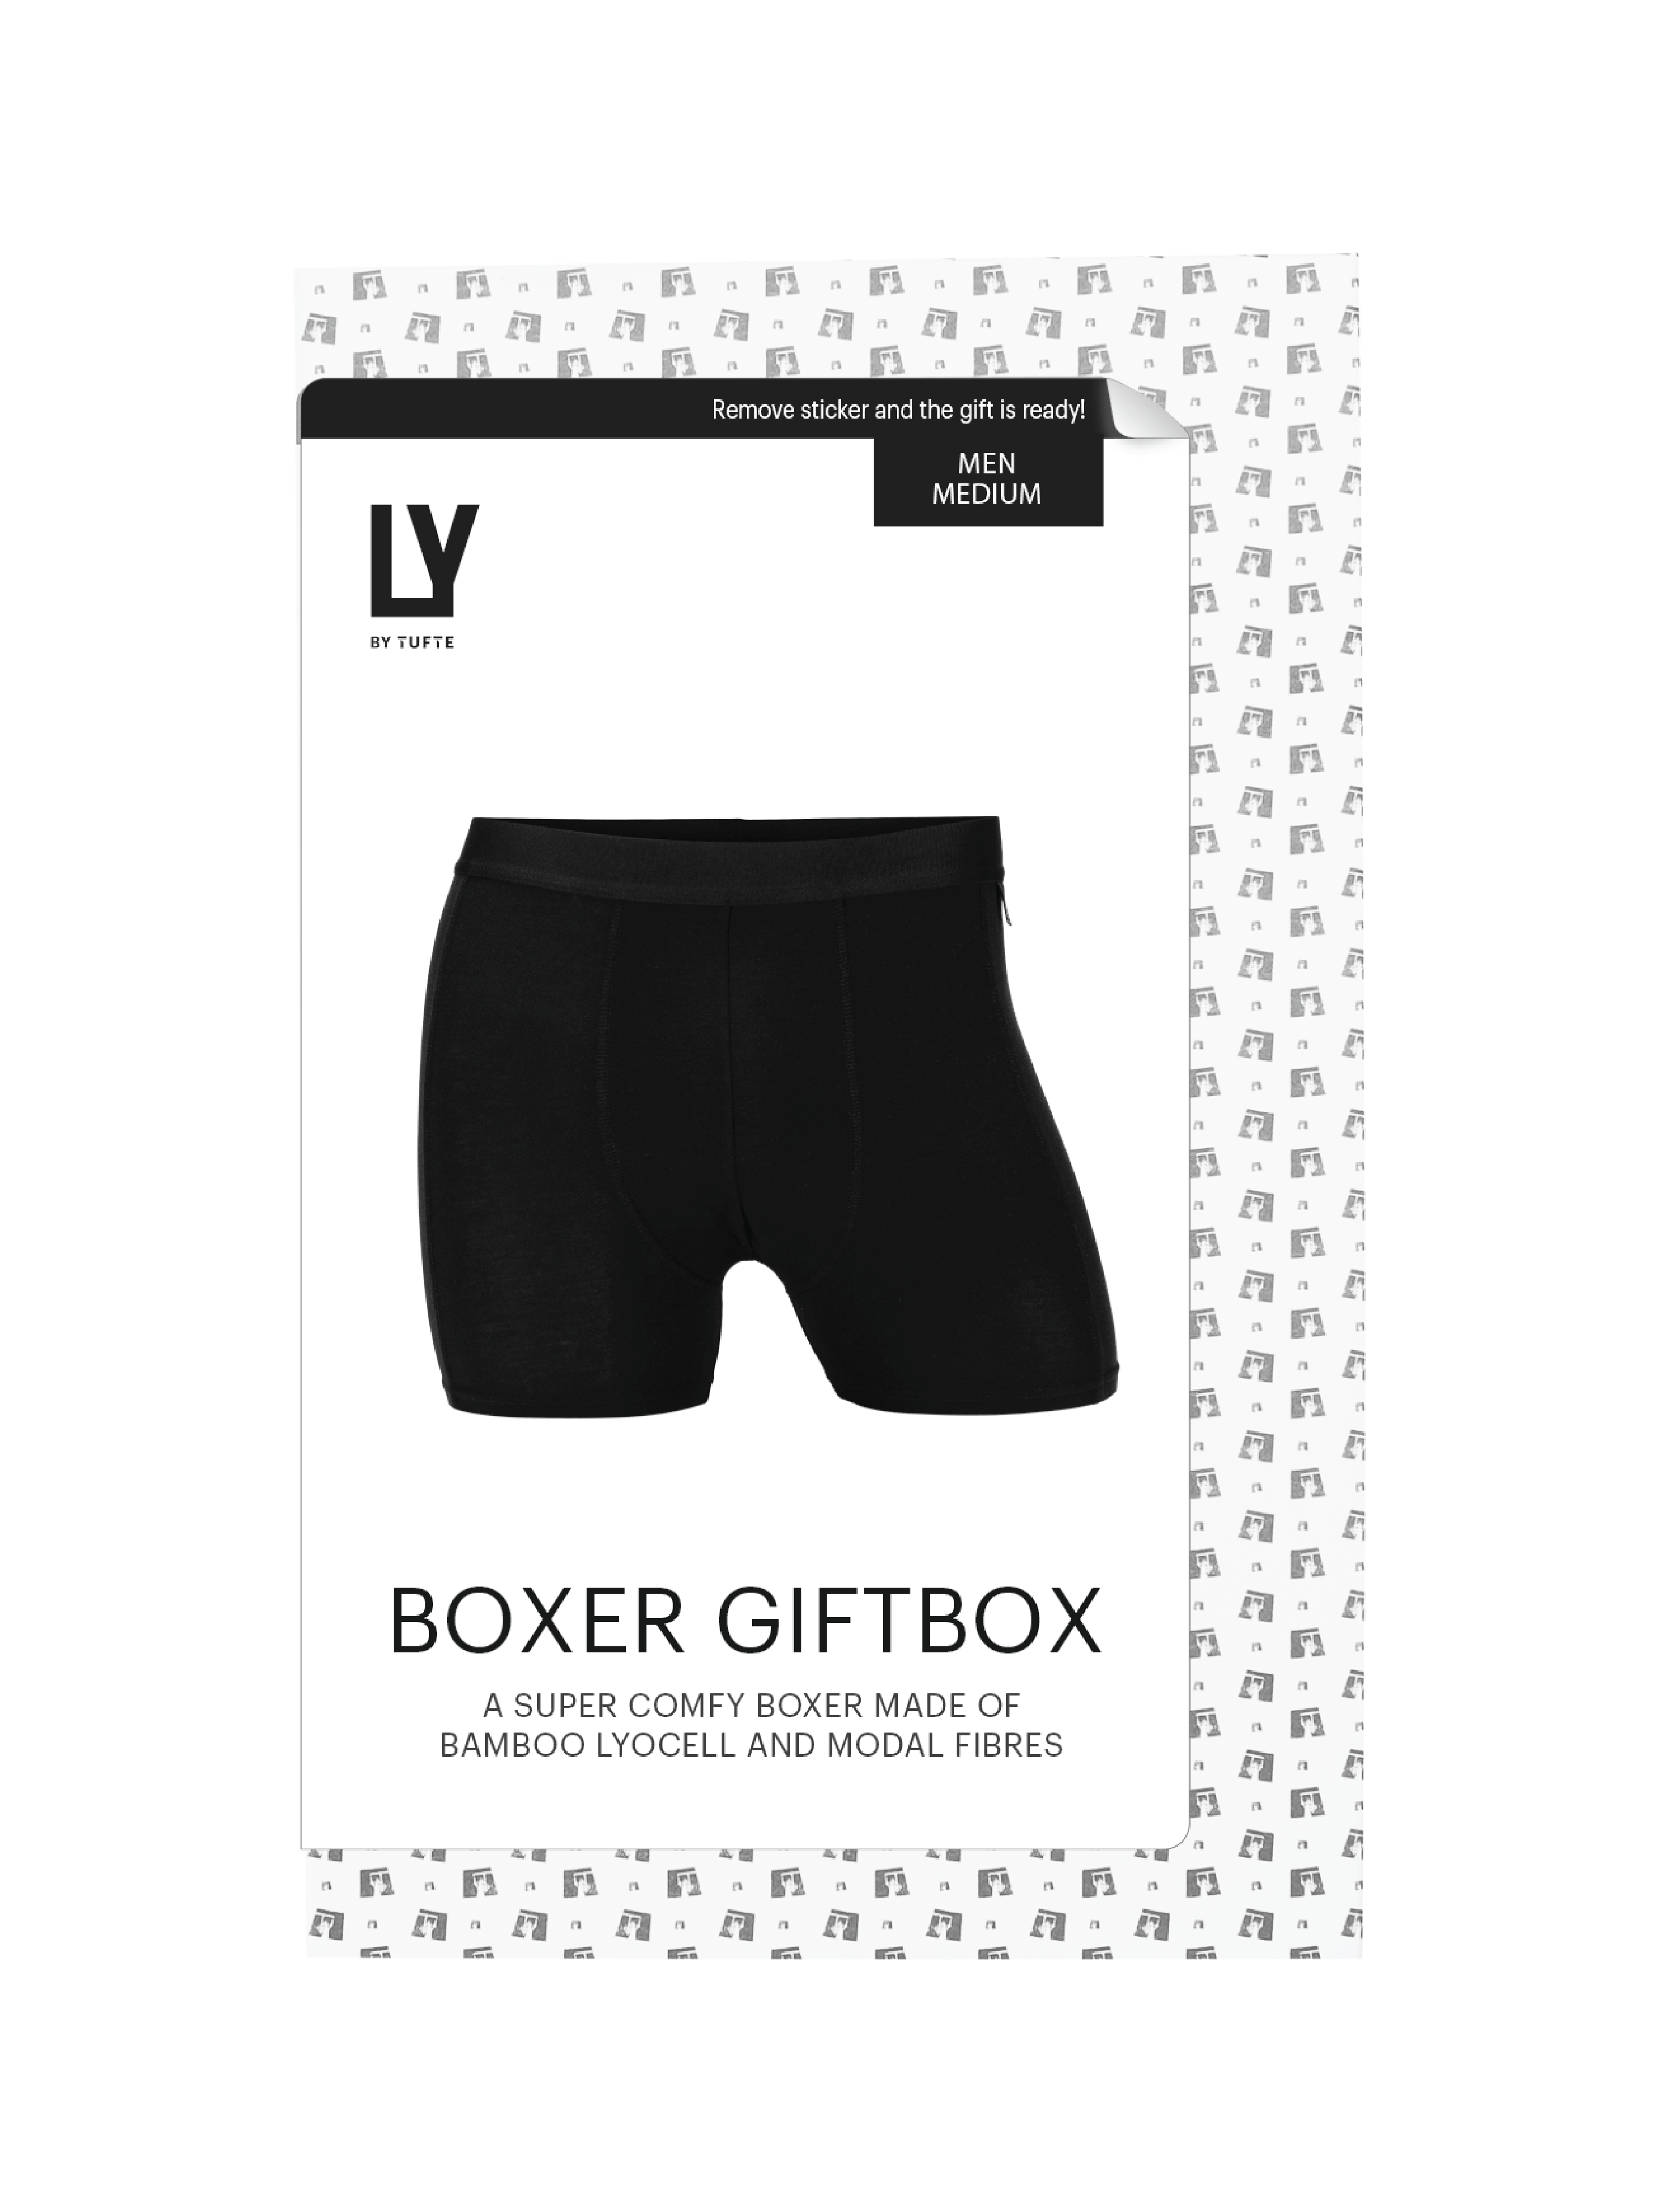 LY by Tufte Boxer Giftbox Black, Størrelse XL, 1 stk.